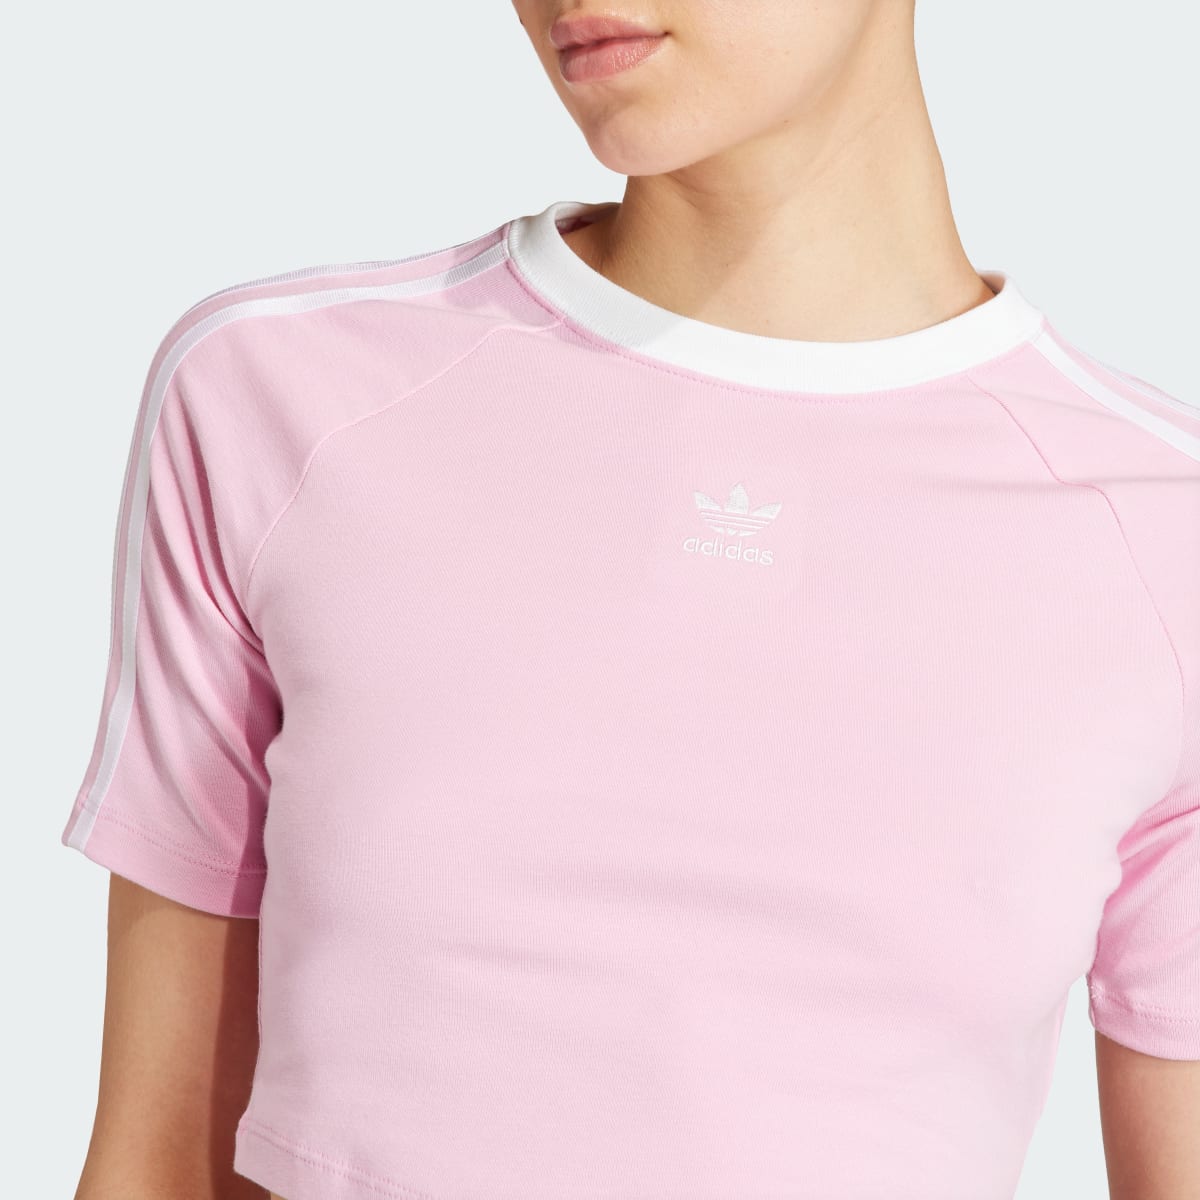 Adidas 3-Streifen Baby T-Shirt. 6